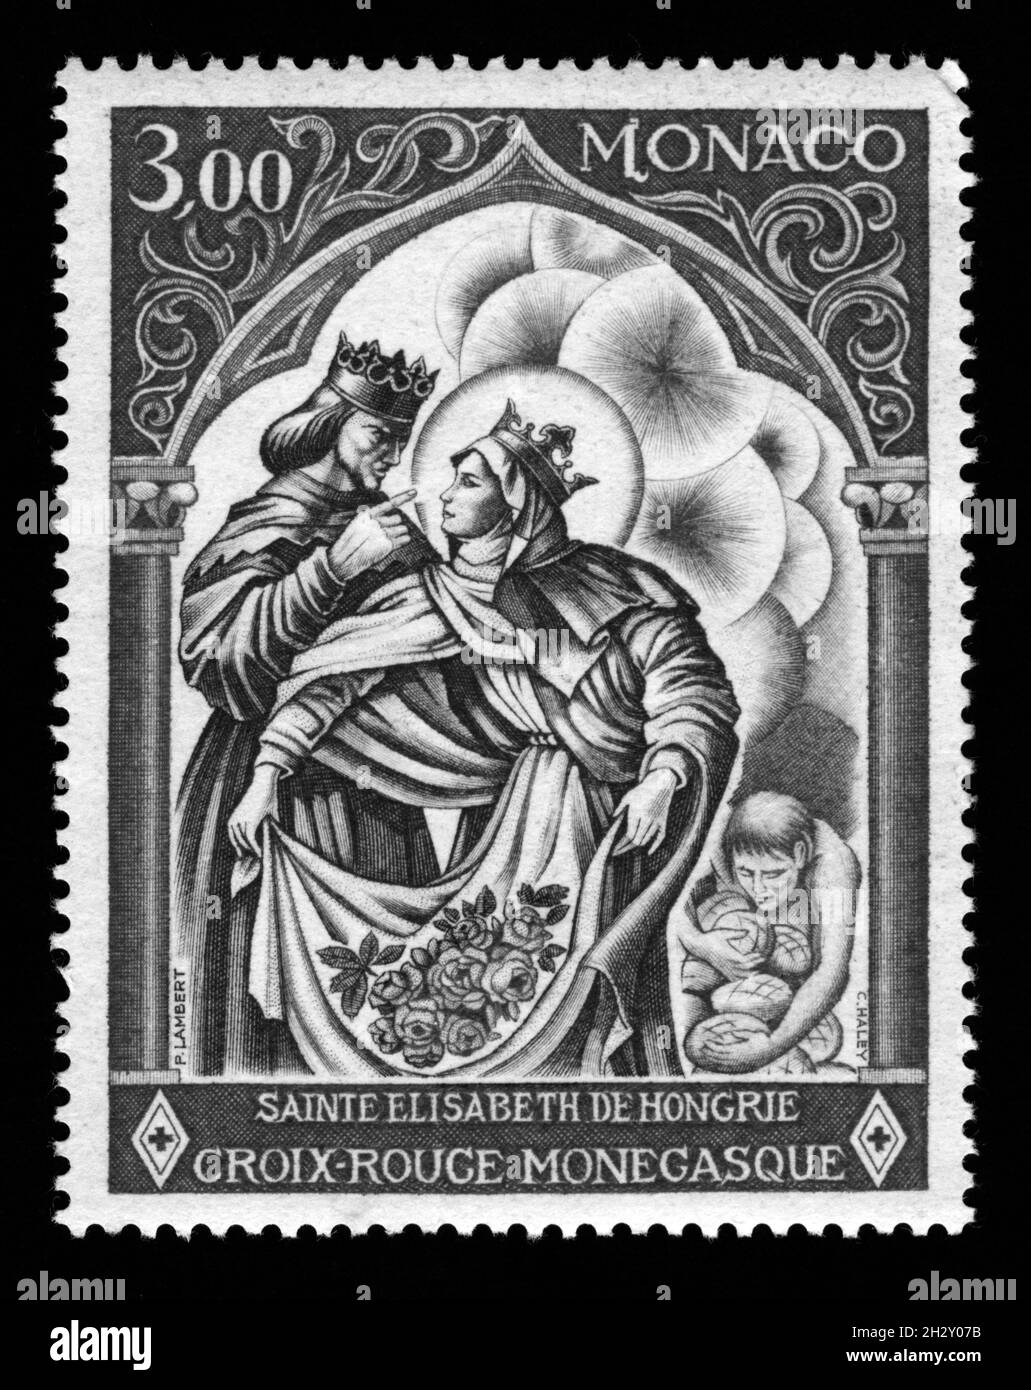 Imprimé timbres à Monaco, Sainte Elisabeth de Hongrie, Croix-Rouge monégasque Banque D'Images